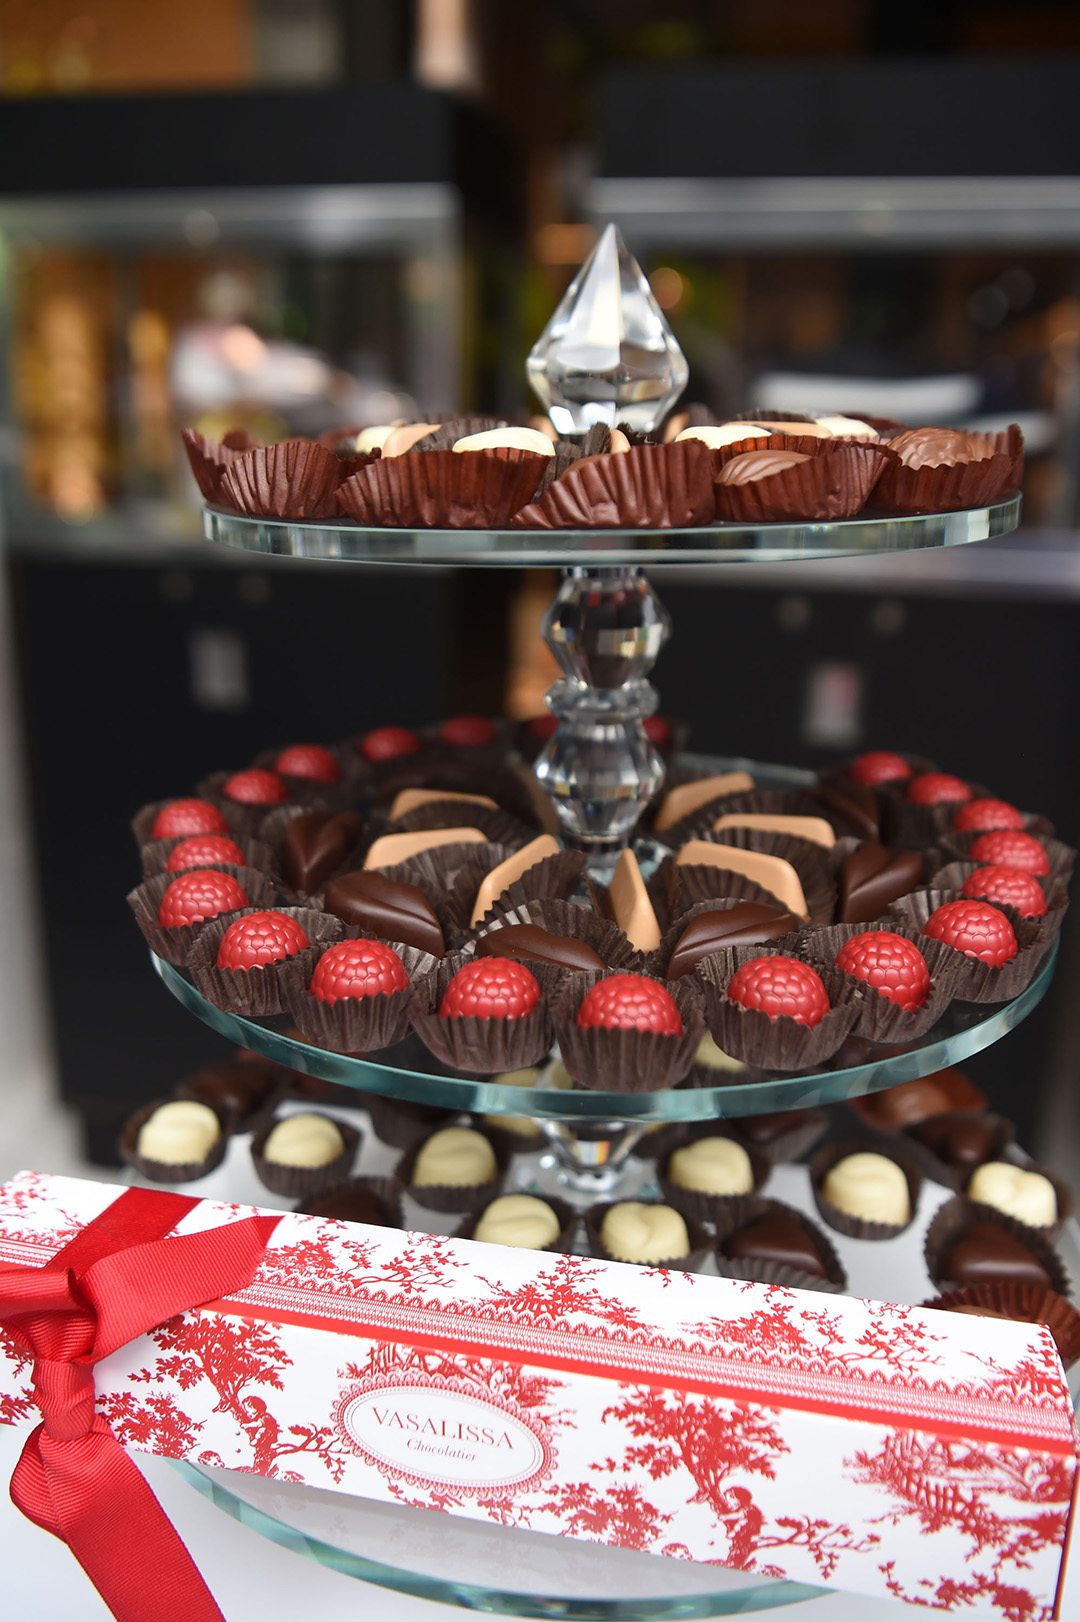 Vasalissa Chocolatier chocolates featured in Collectors Suite during Collectors Weekend 2019